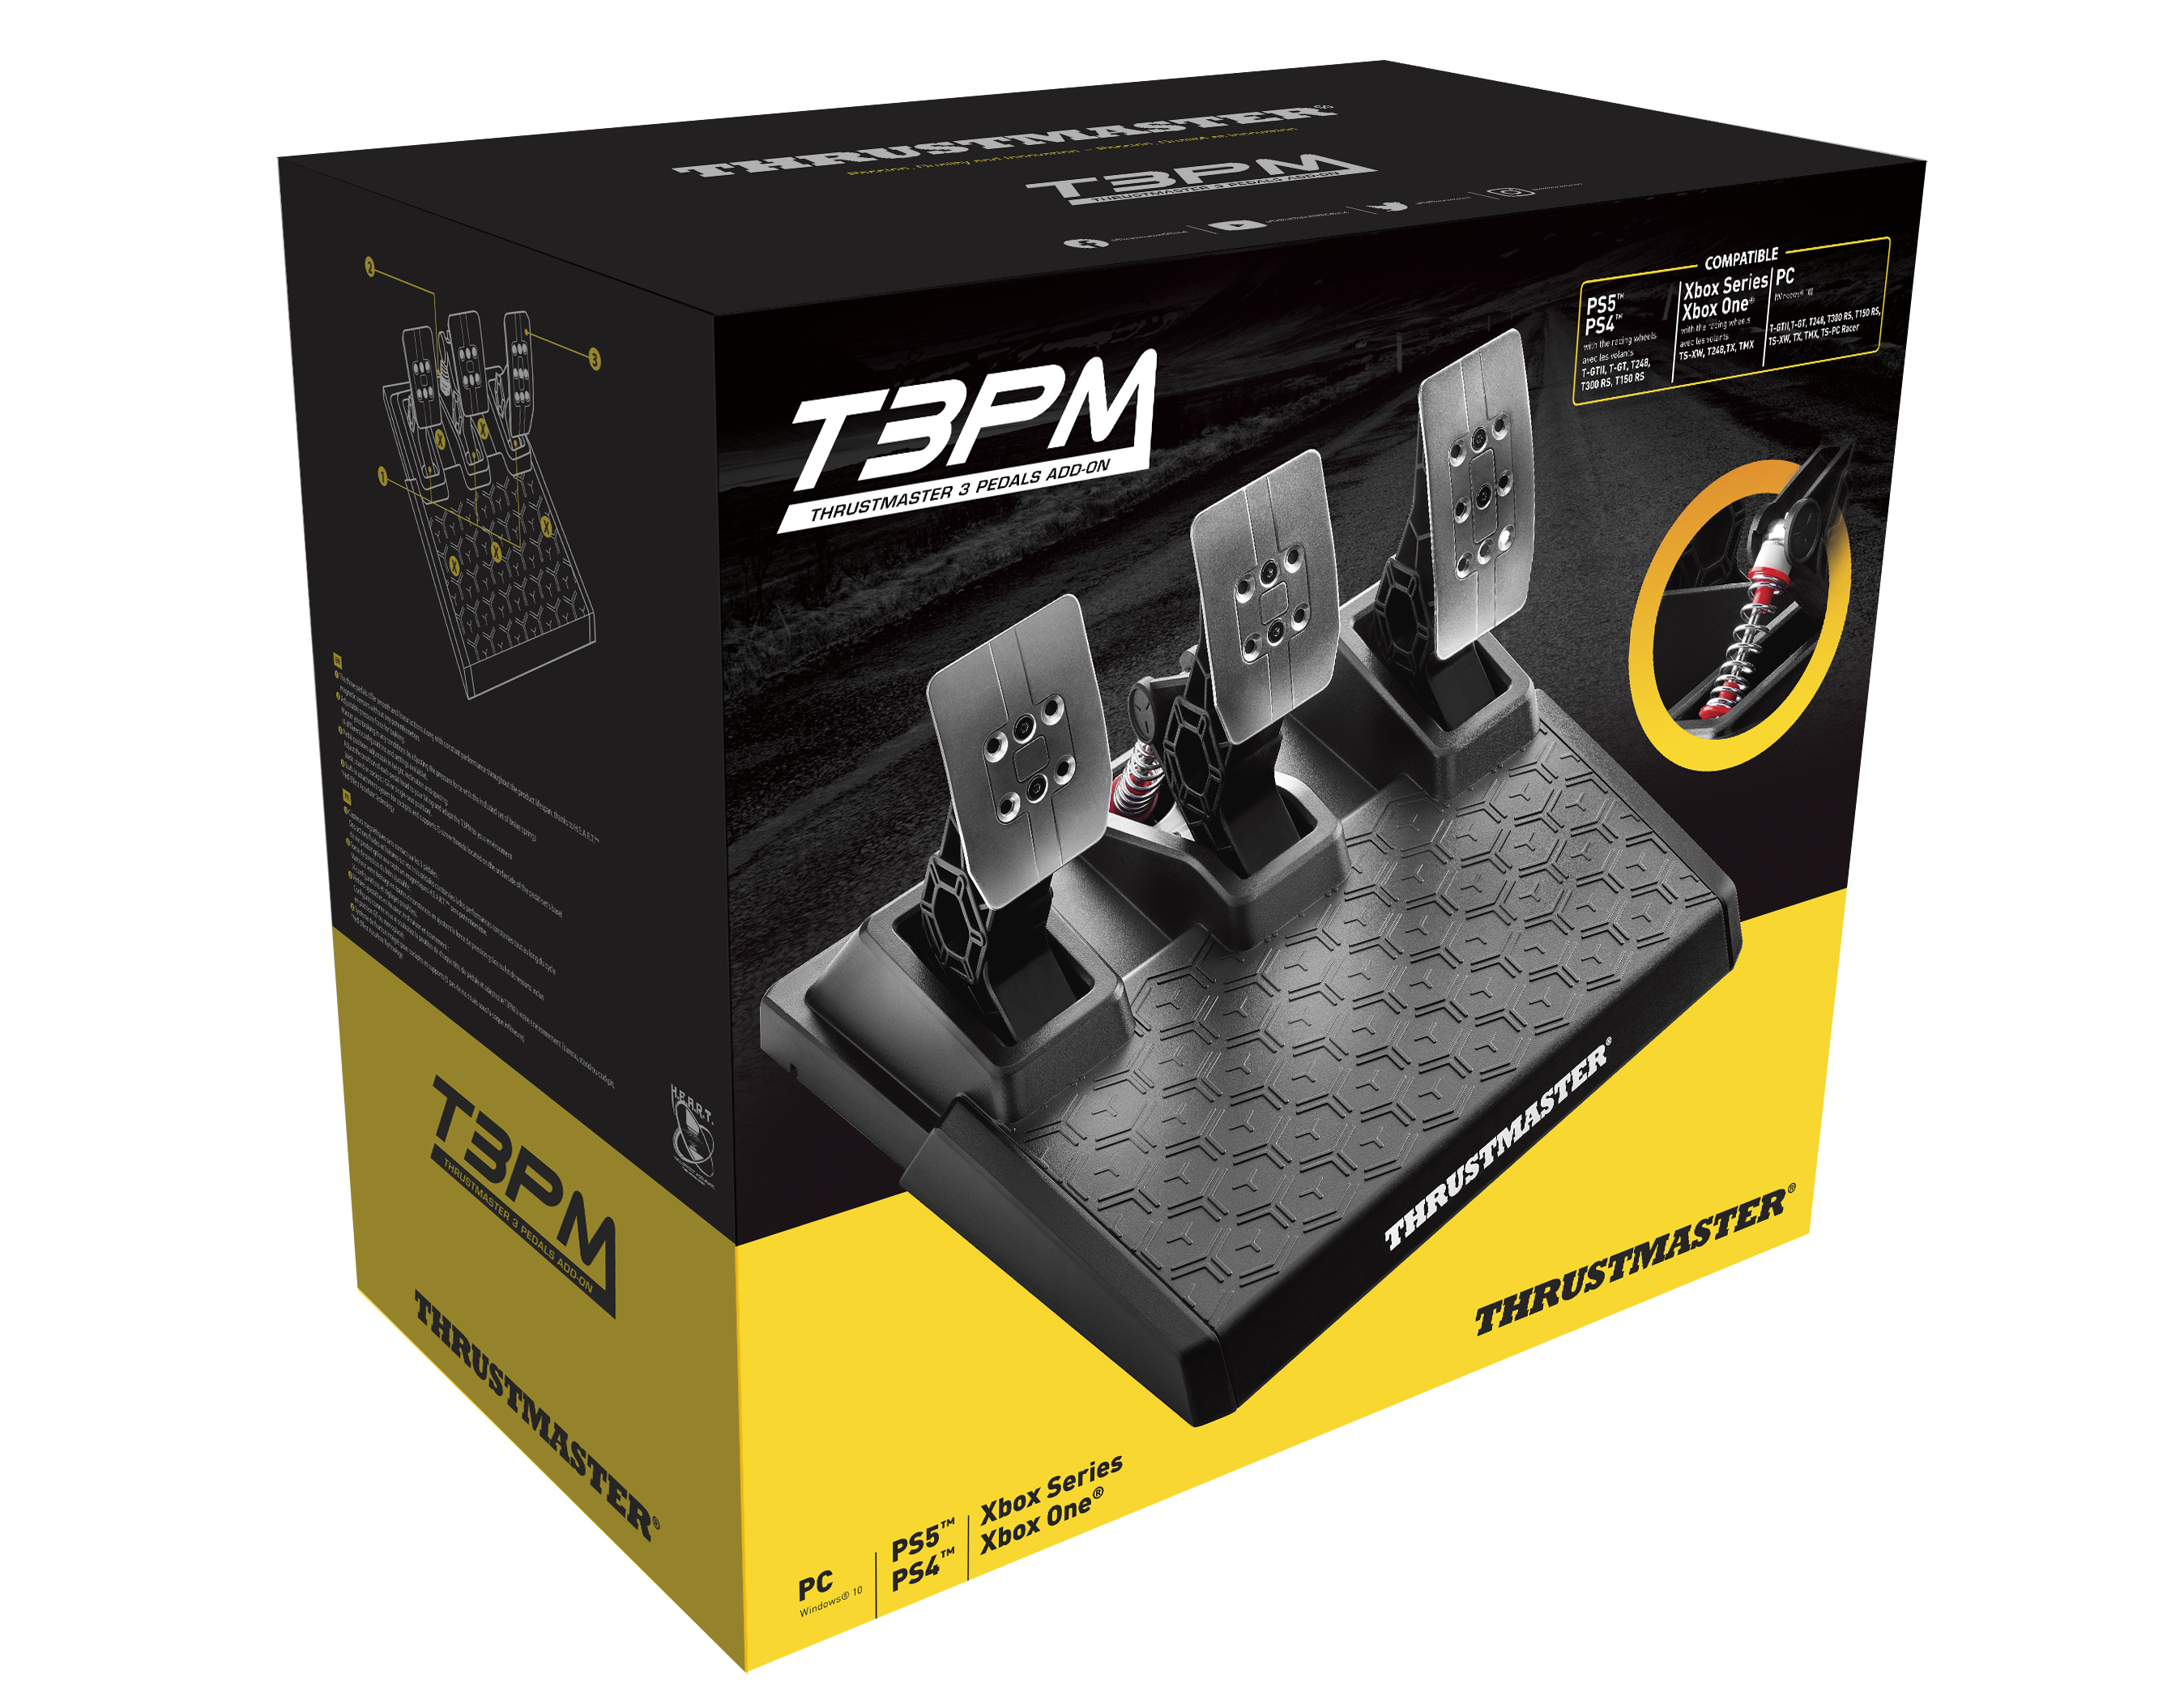 ThrustMaster T3PM Magnetische Pedalen